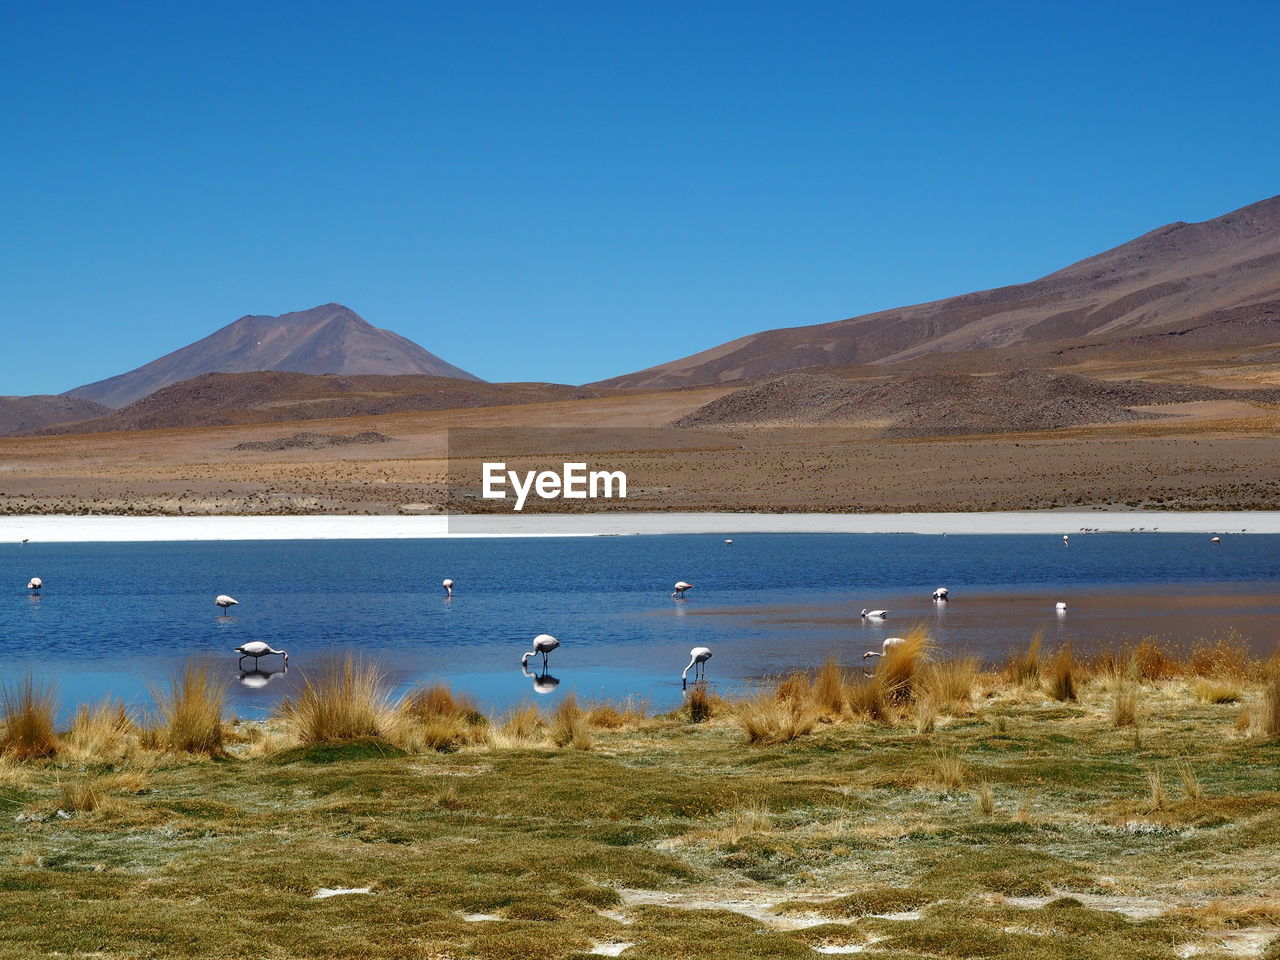 Laguna hedionda, bolivia